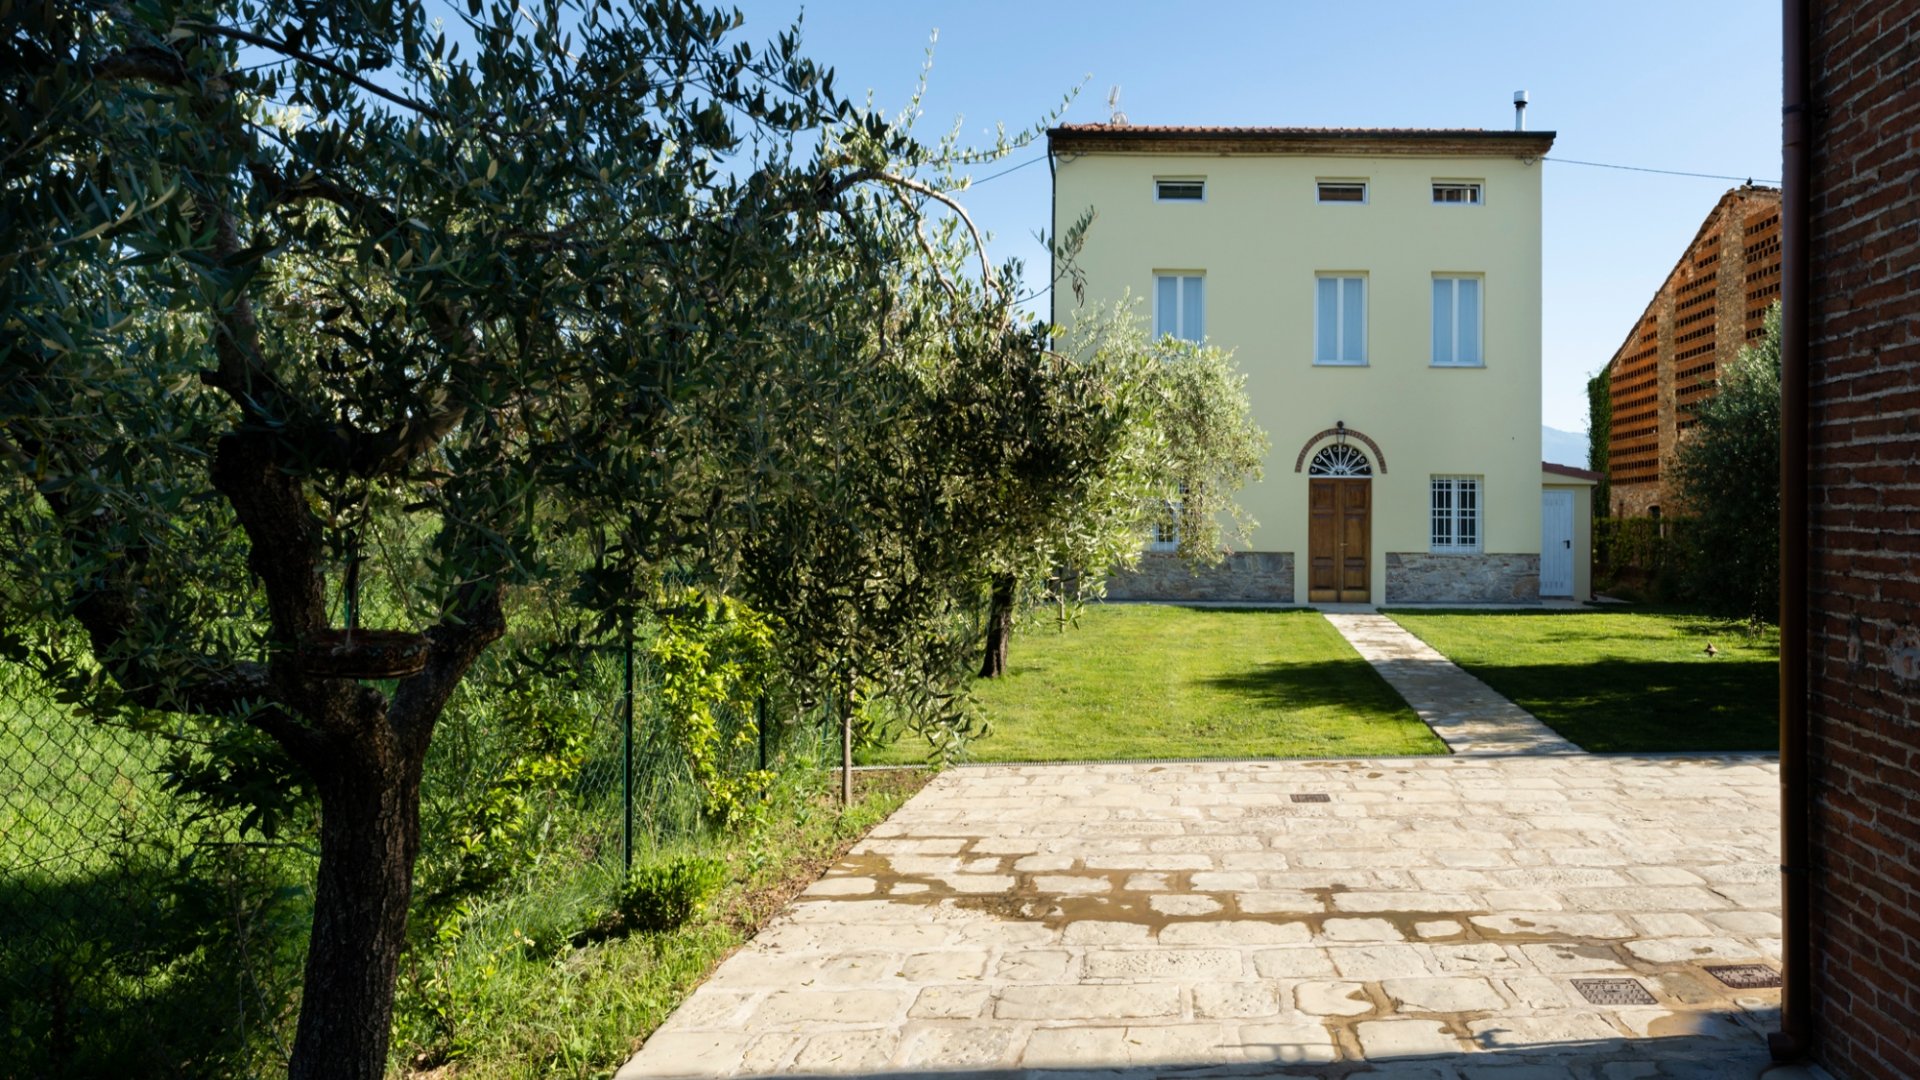 Soggiorno ecosostenibile presso Villa Galgani la prima struttura Eco in tutta la Lucchesia